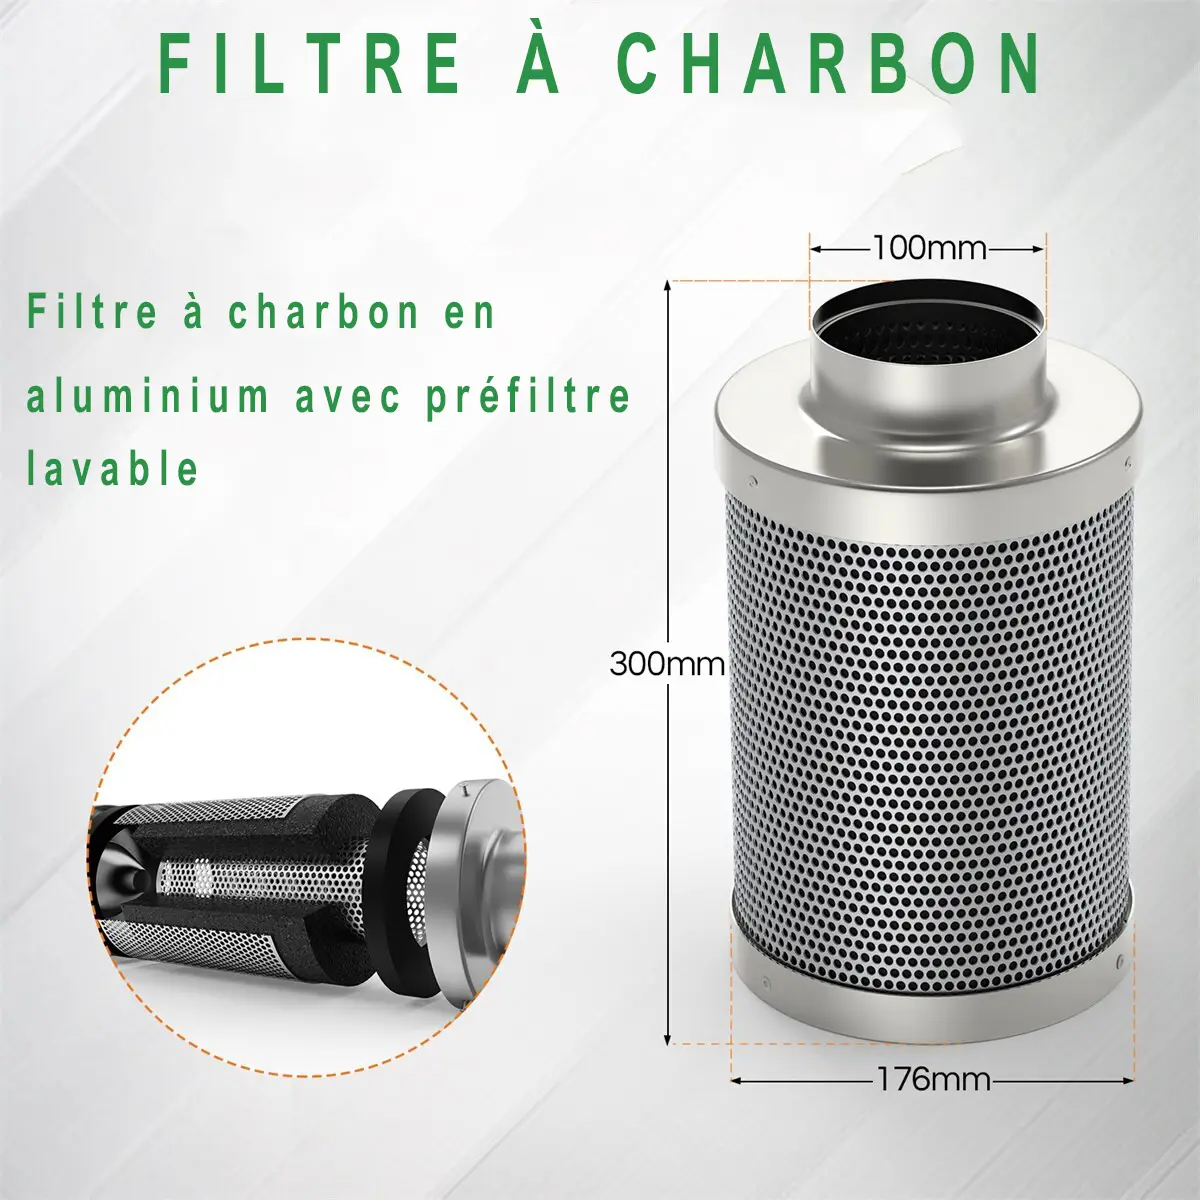 100mm carbon filter